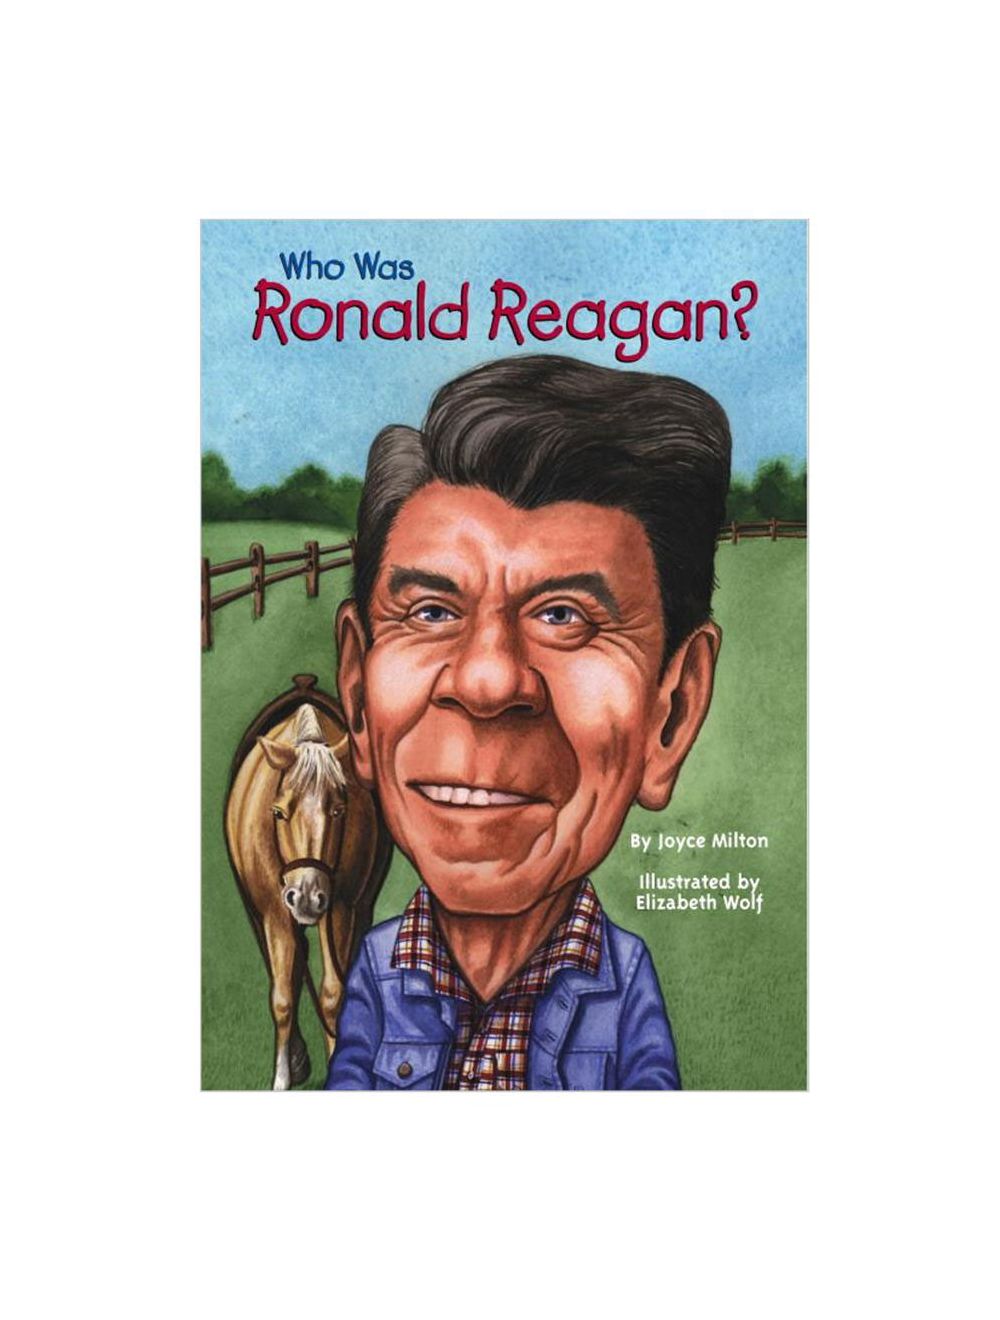 was　Reagan?　Ronald　Who　Book